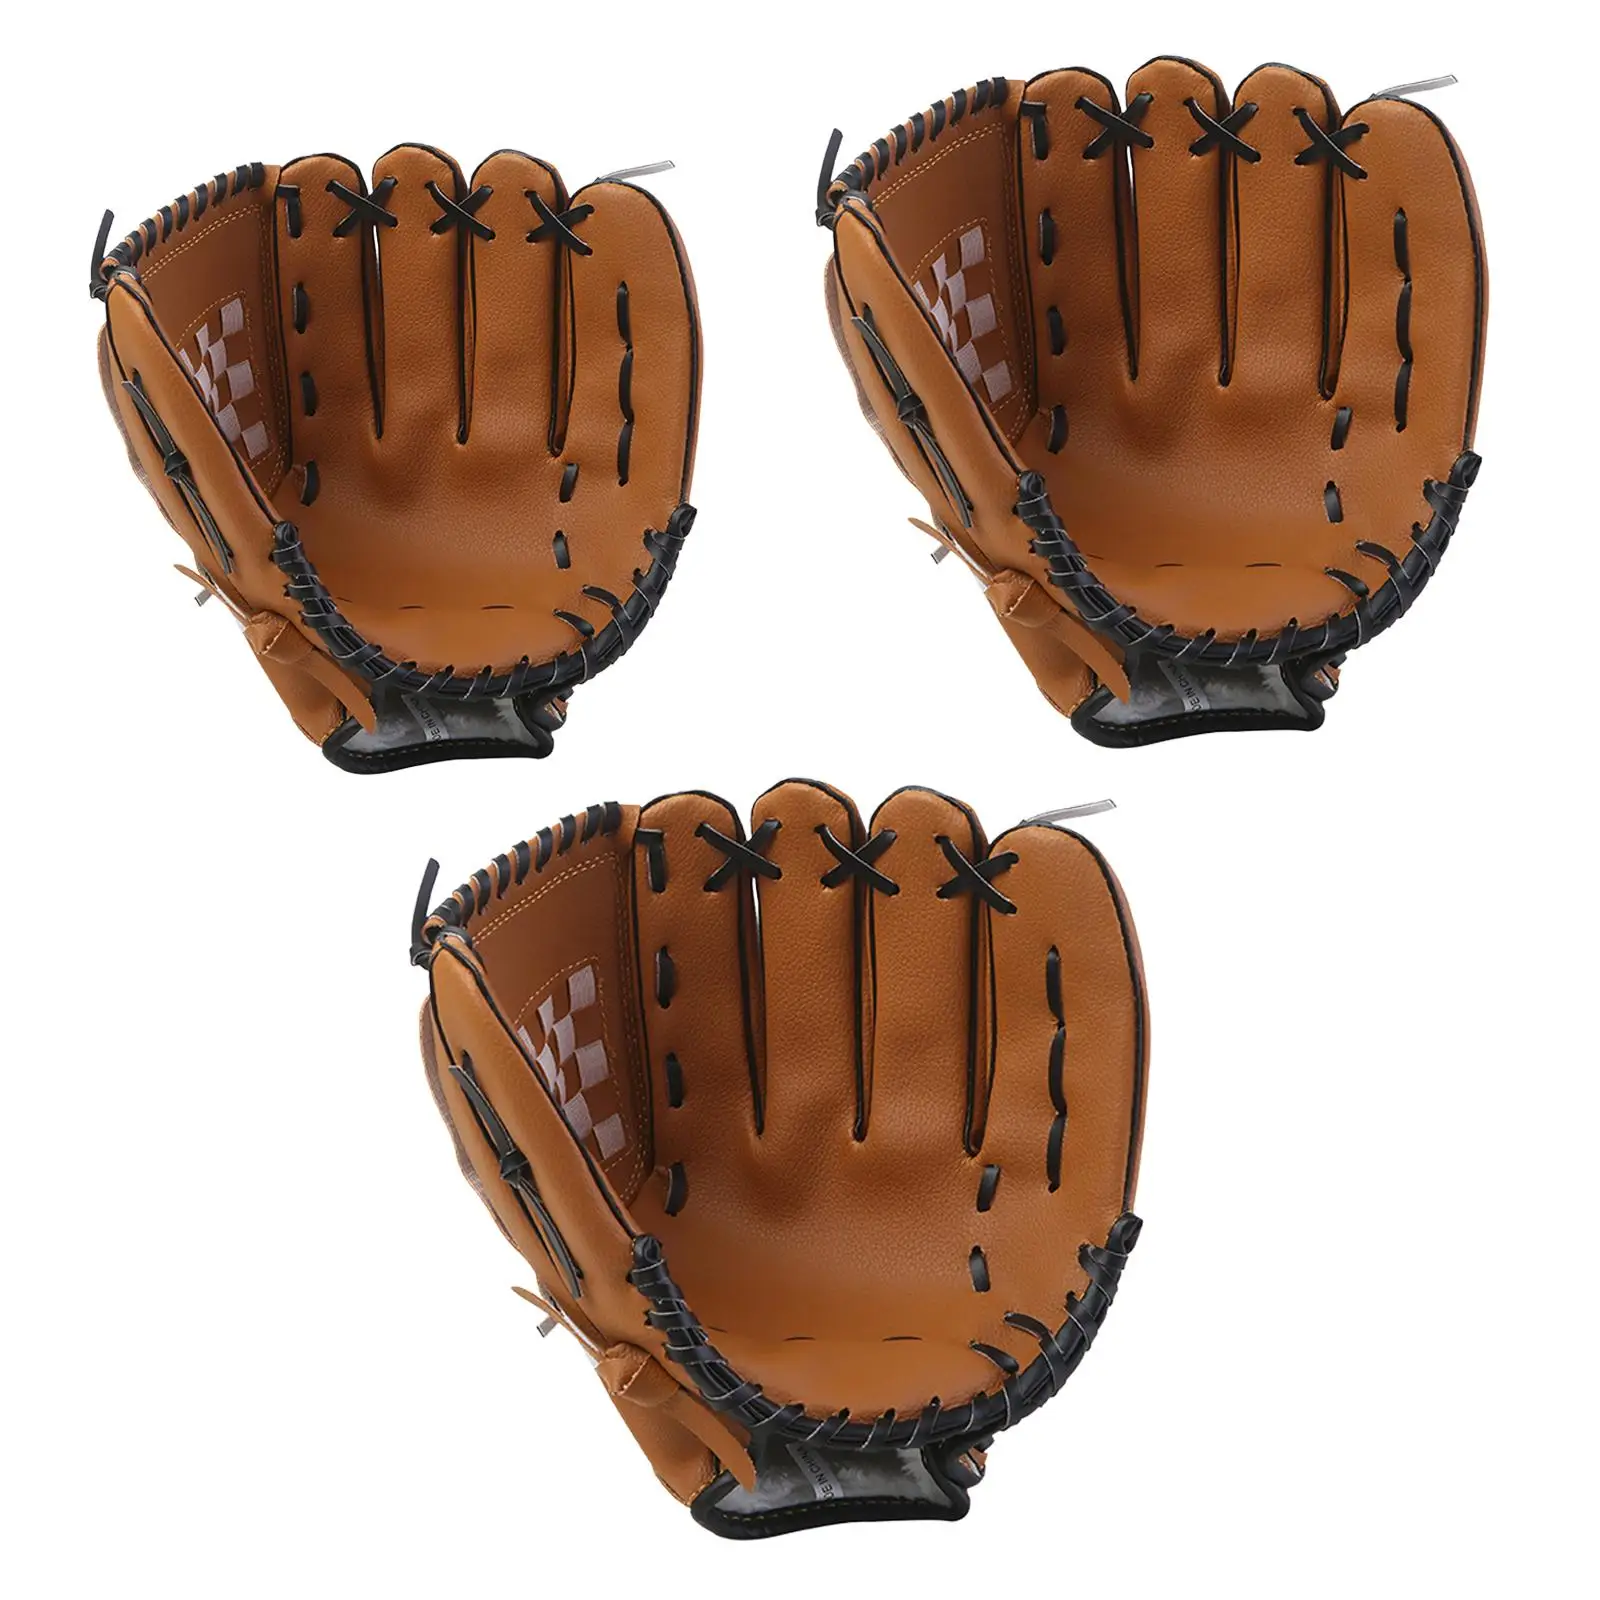 S Infield Pitcher Baseball Softball Fielding Glove For Adult